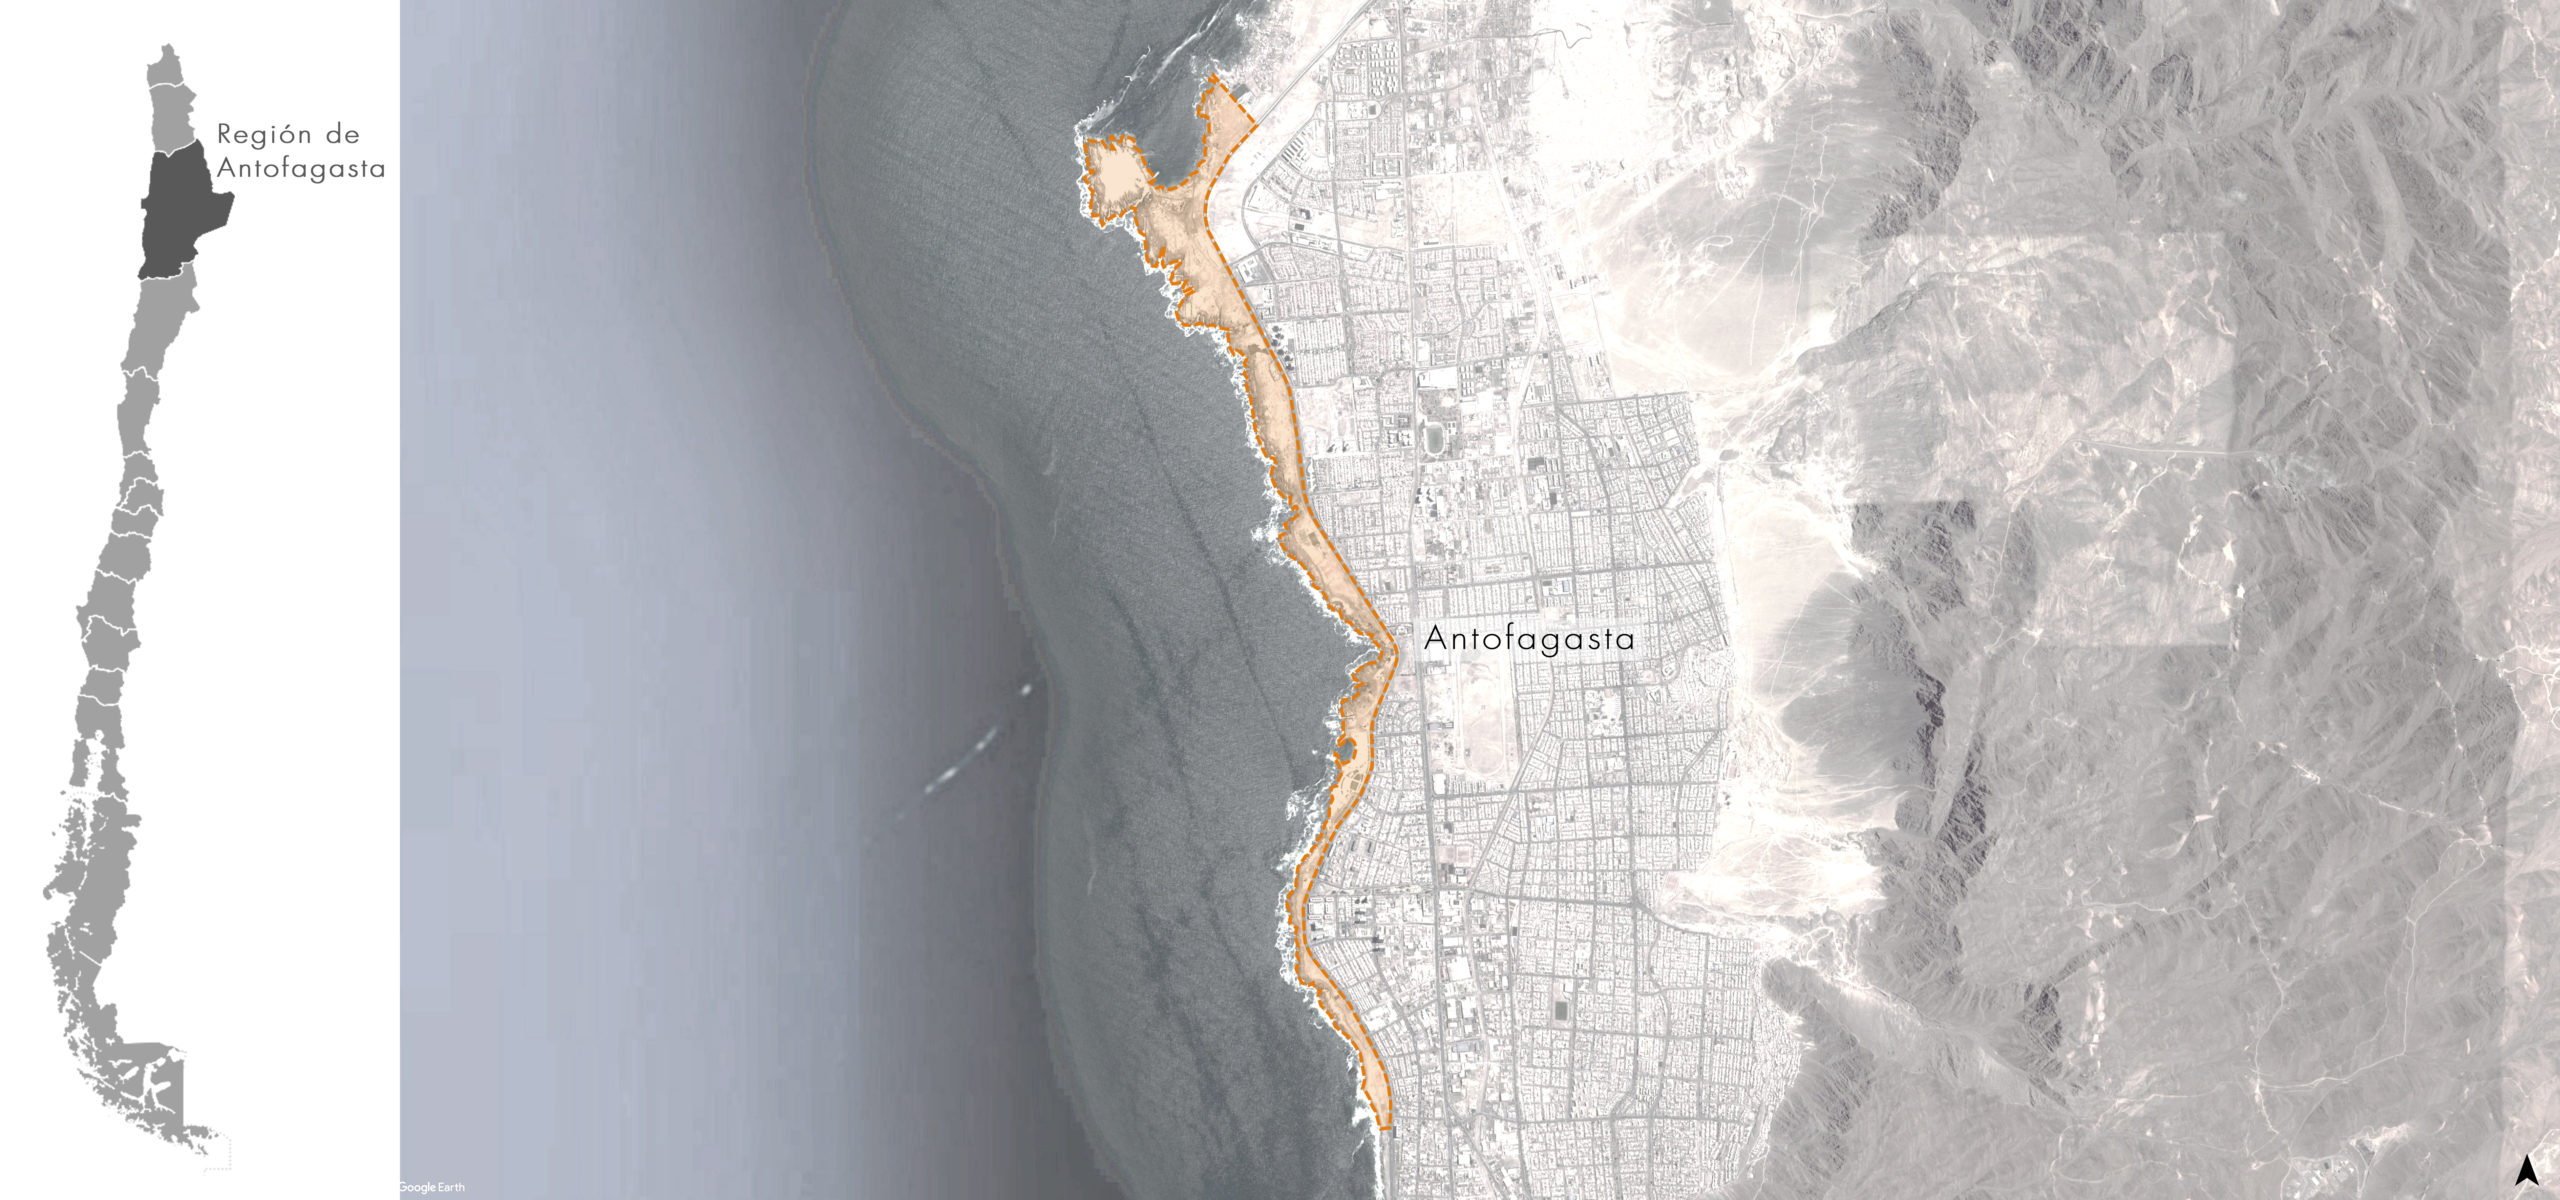 Propuesta Concurso Borde Costero Antofagasta, Mención Honrosa